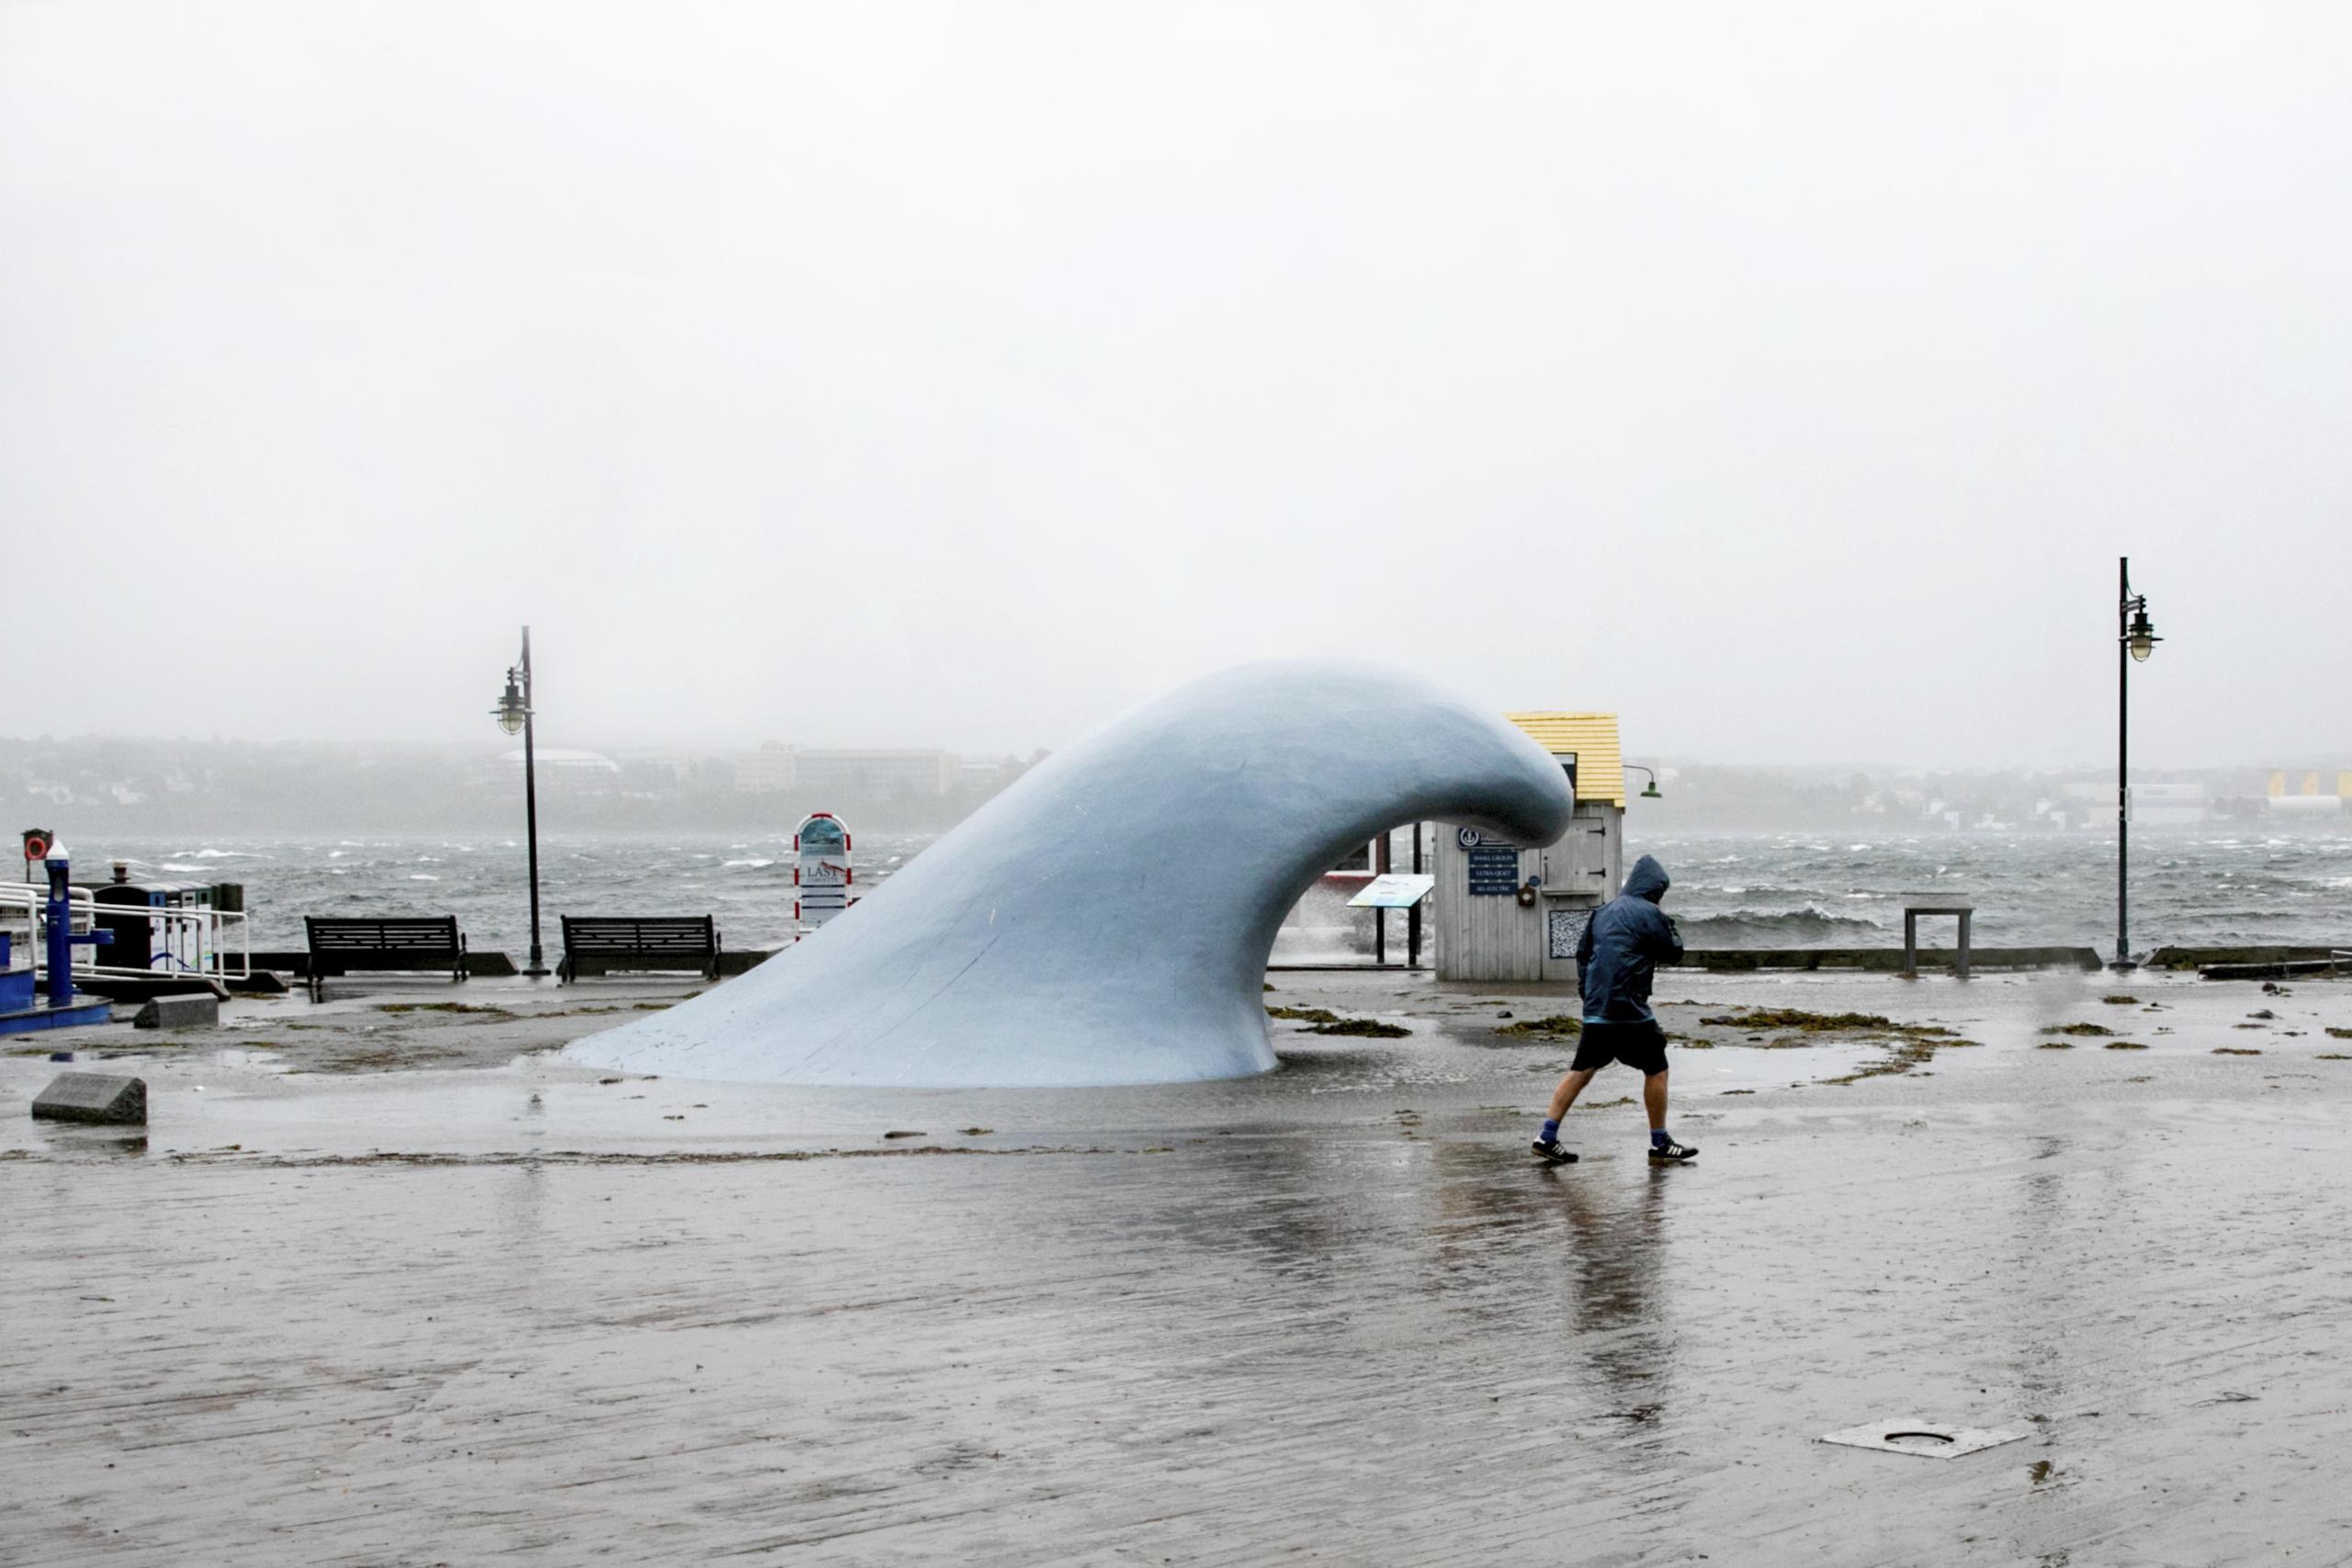 Se pronosticaba una marejada ciclónica de 1 a 3 pies en la costa de Maine, y el NHC advirtió que iría acompañada de olas grandes y destructivas.